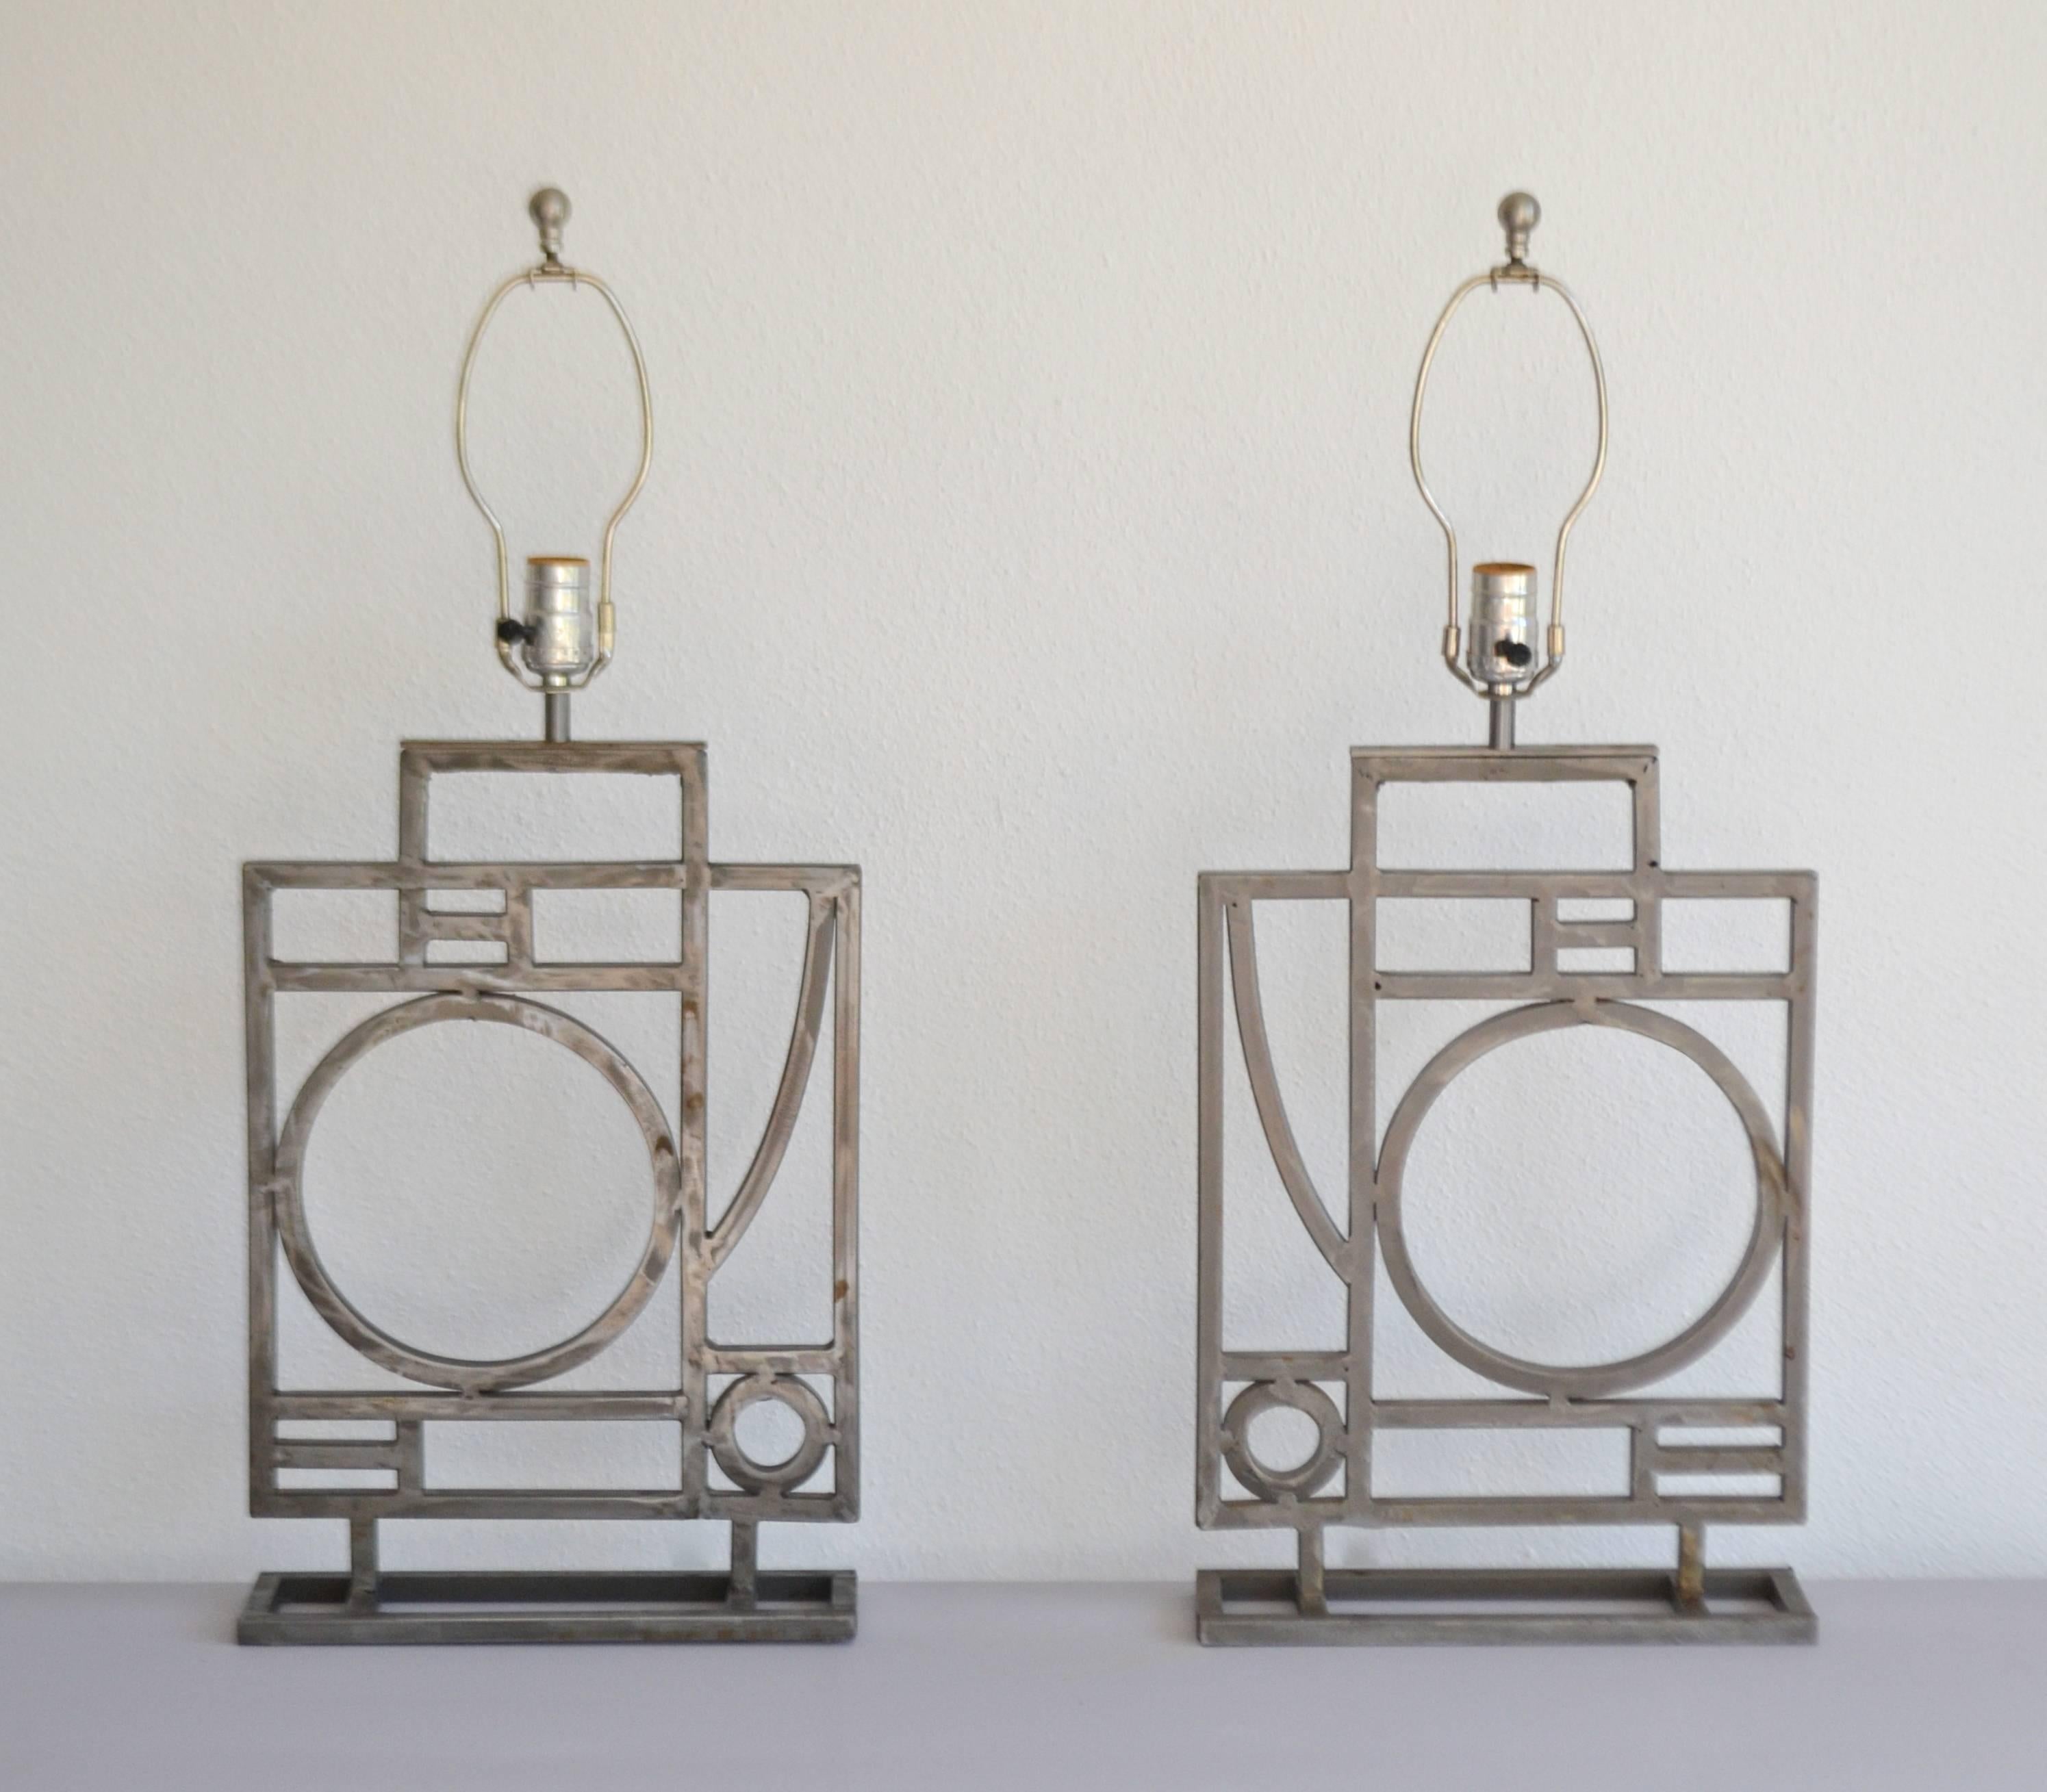 Pair of Postmodern Geometrical Form Table Lamps by Robert Sonneman 1